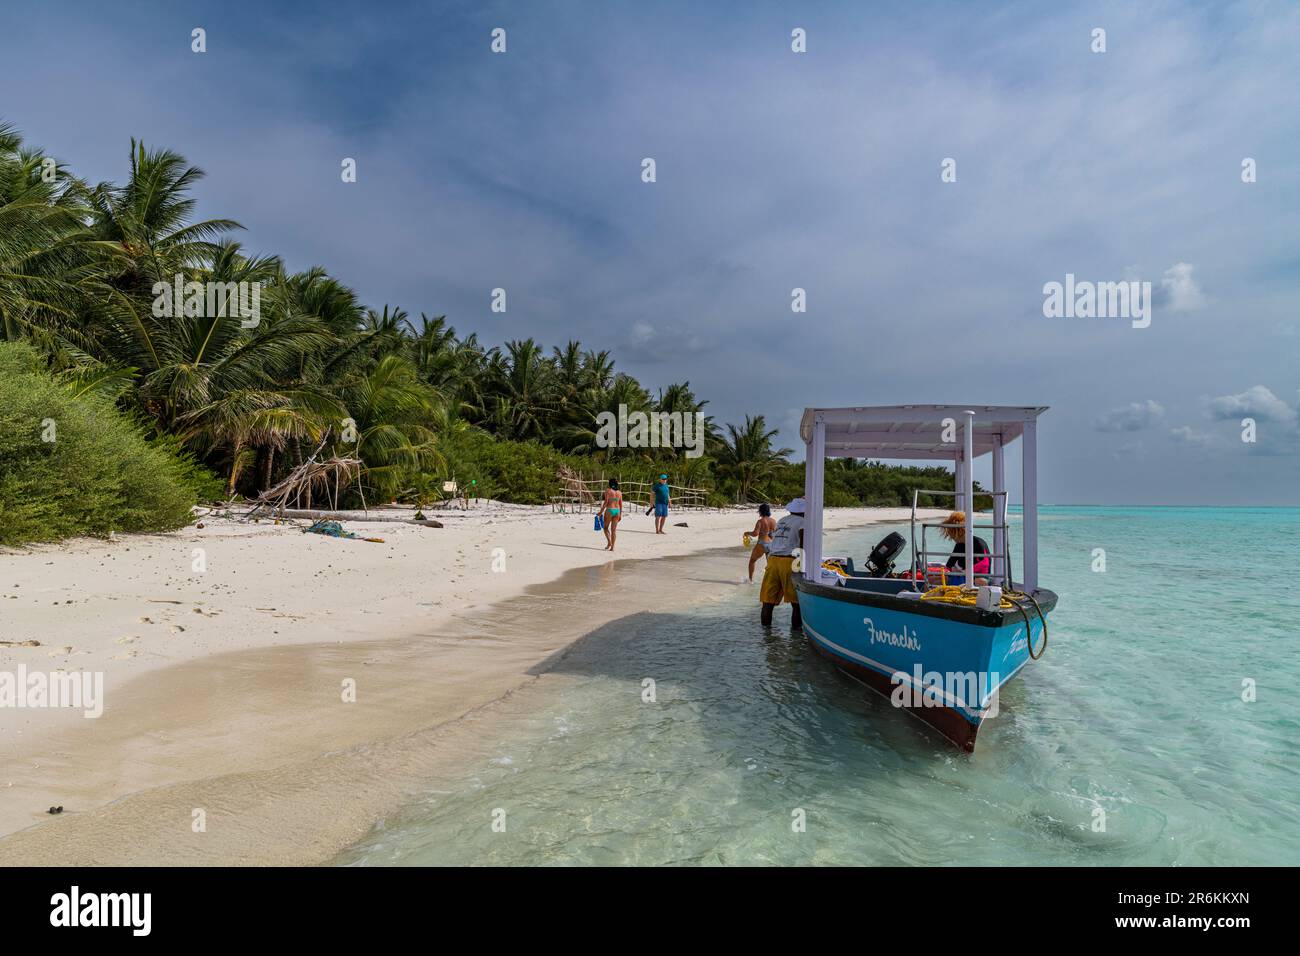 Plage de sable blanc, île Parali 1, archipel de Lakshadweep, territoire de l'Union de l'Inde, Océan Indien, Asie Banque D'Images